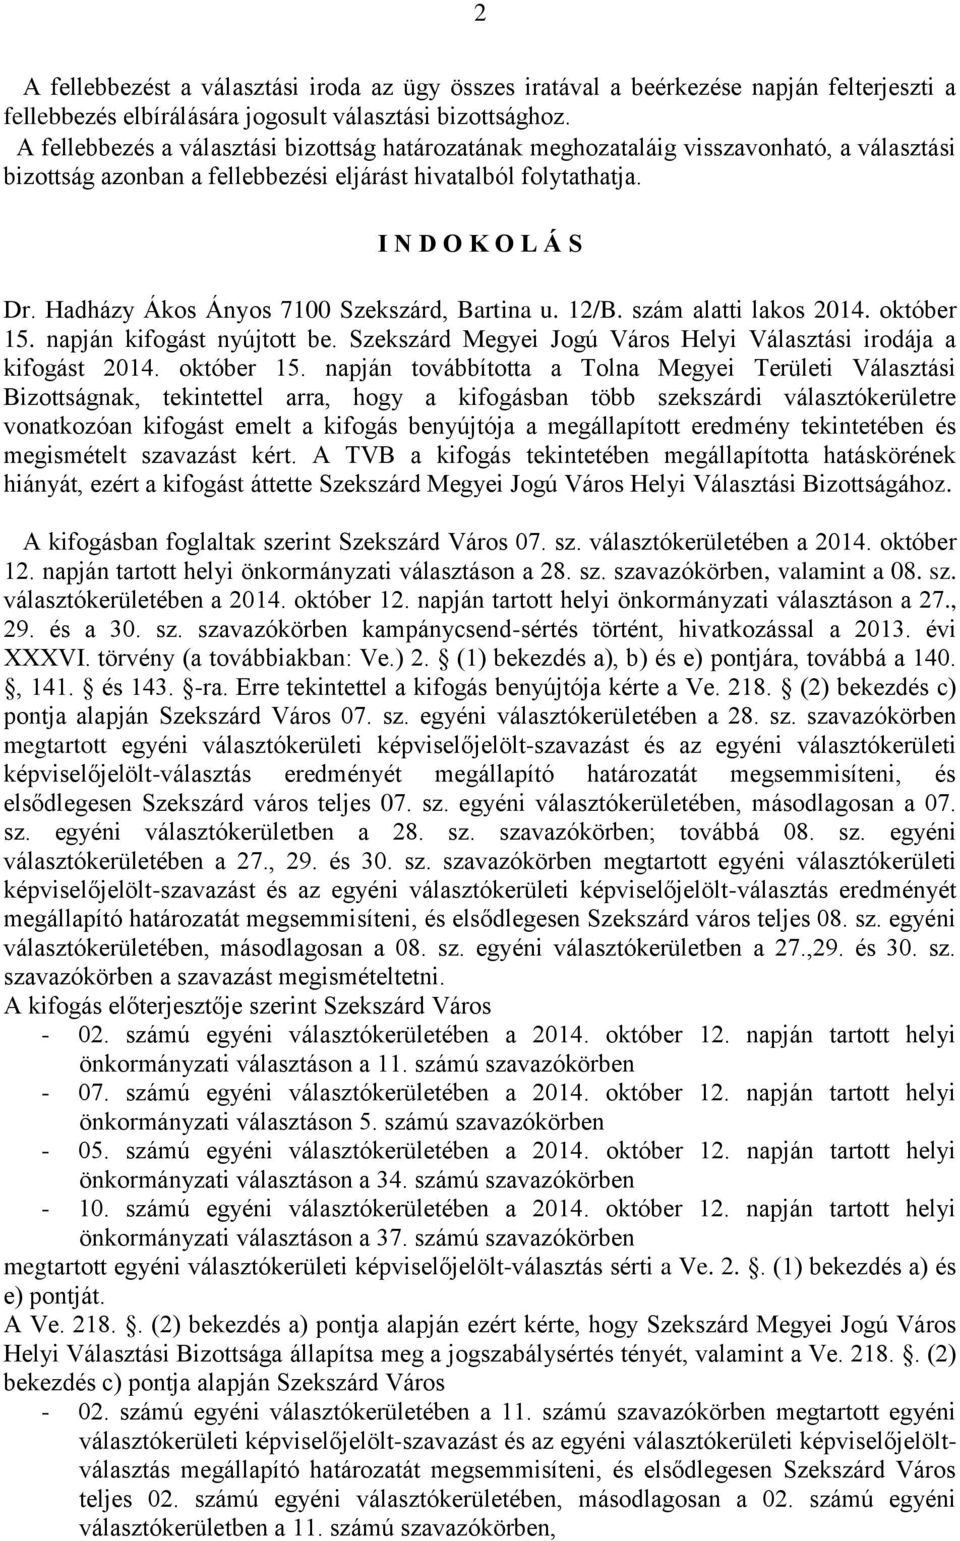 Hadházy Ákos Ányos 7100 Szekszárd, Bartina u. 12/B. szám alatti lakos 2014. október 15.